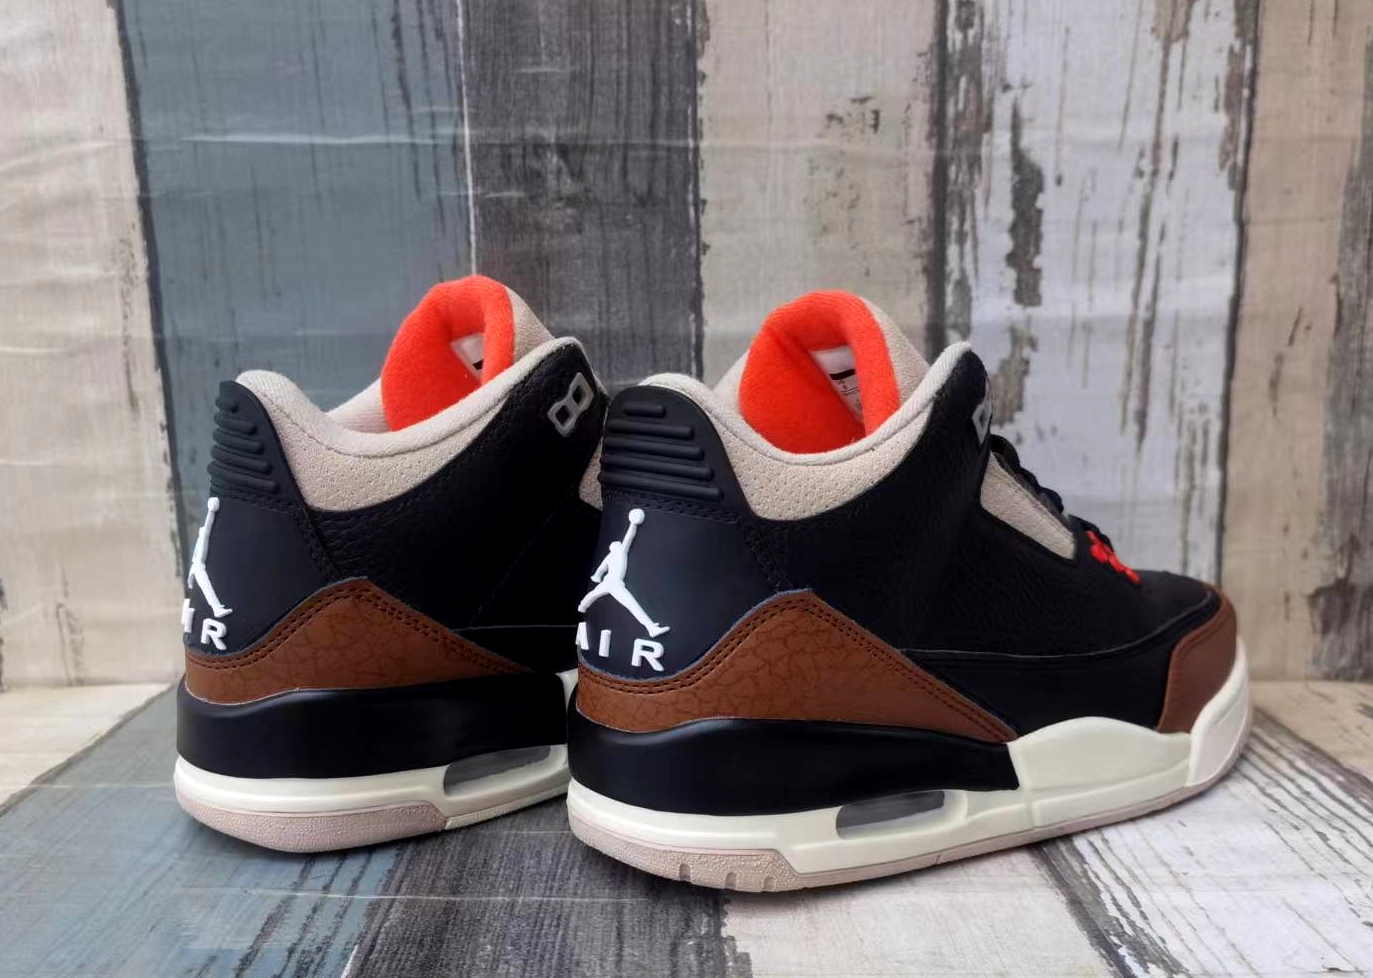 Air Jordan 3 Sneakers For Men in 252502, cheap Jordan3, only $69!